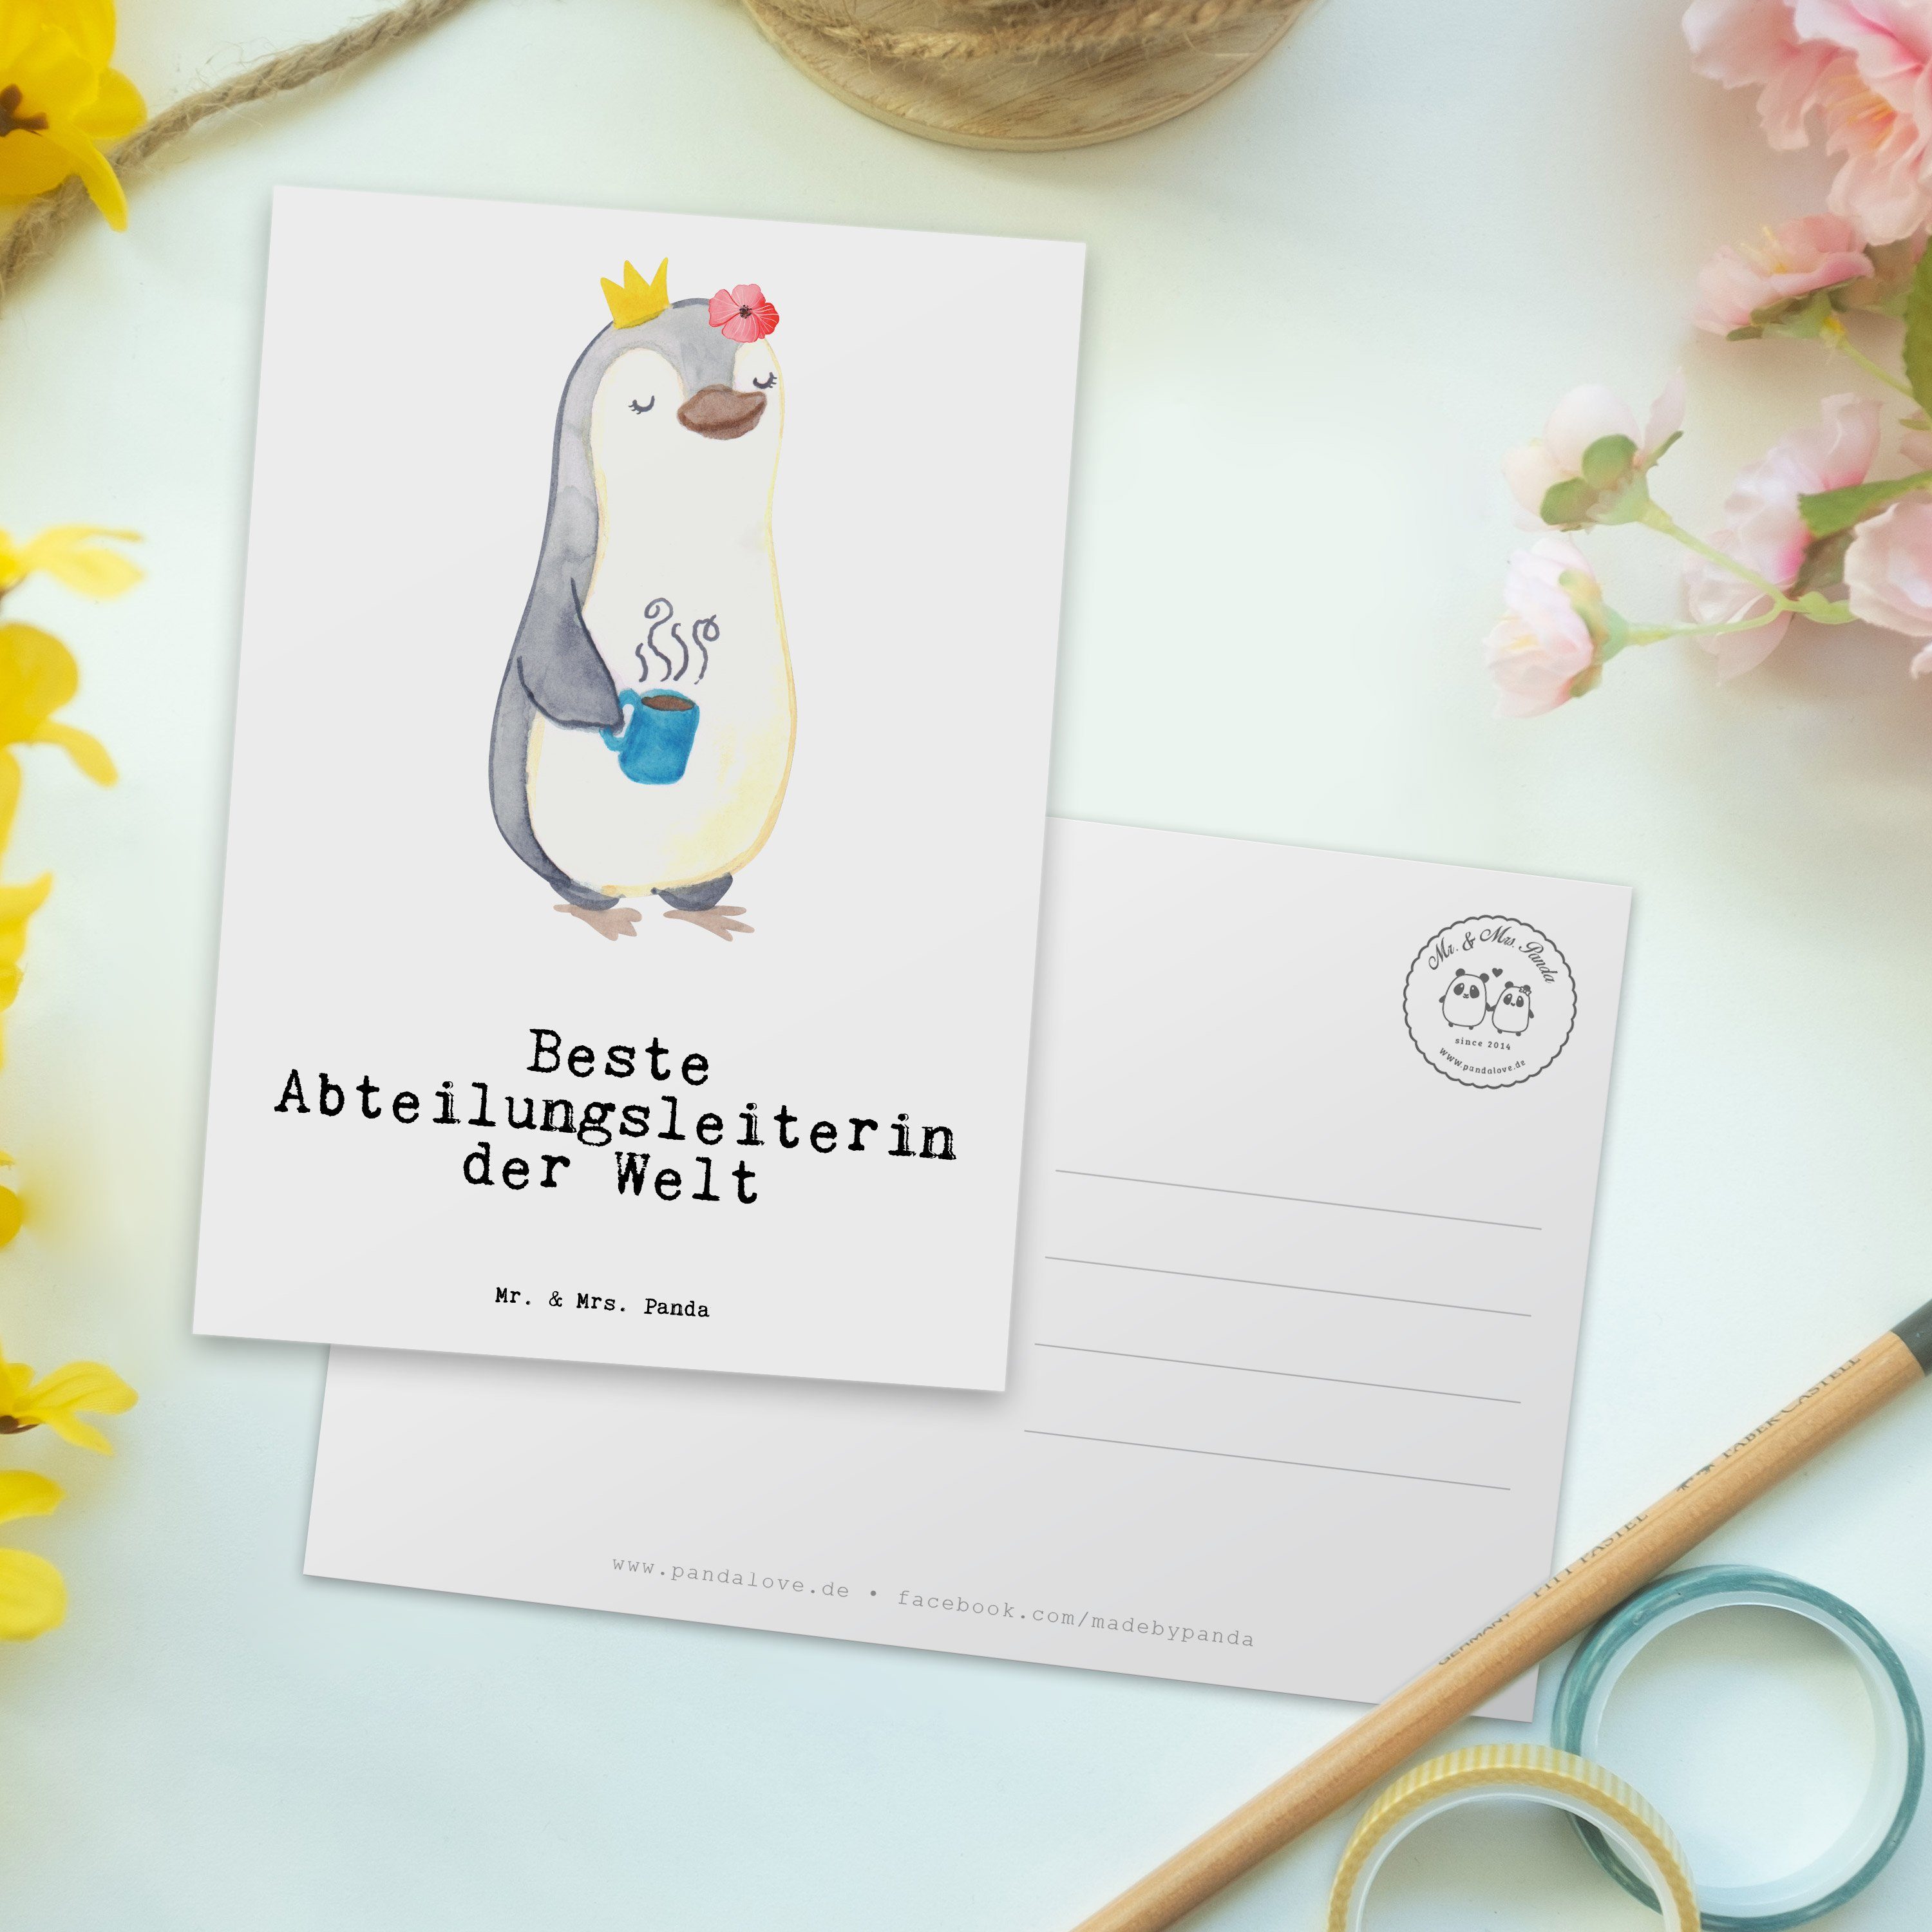 Mr. & Mrs. der Weiß A Geschenk, Danke, Pinguin Postkarte - Welt Abteilungsleiterin - Beste Panda